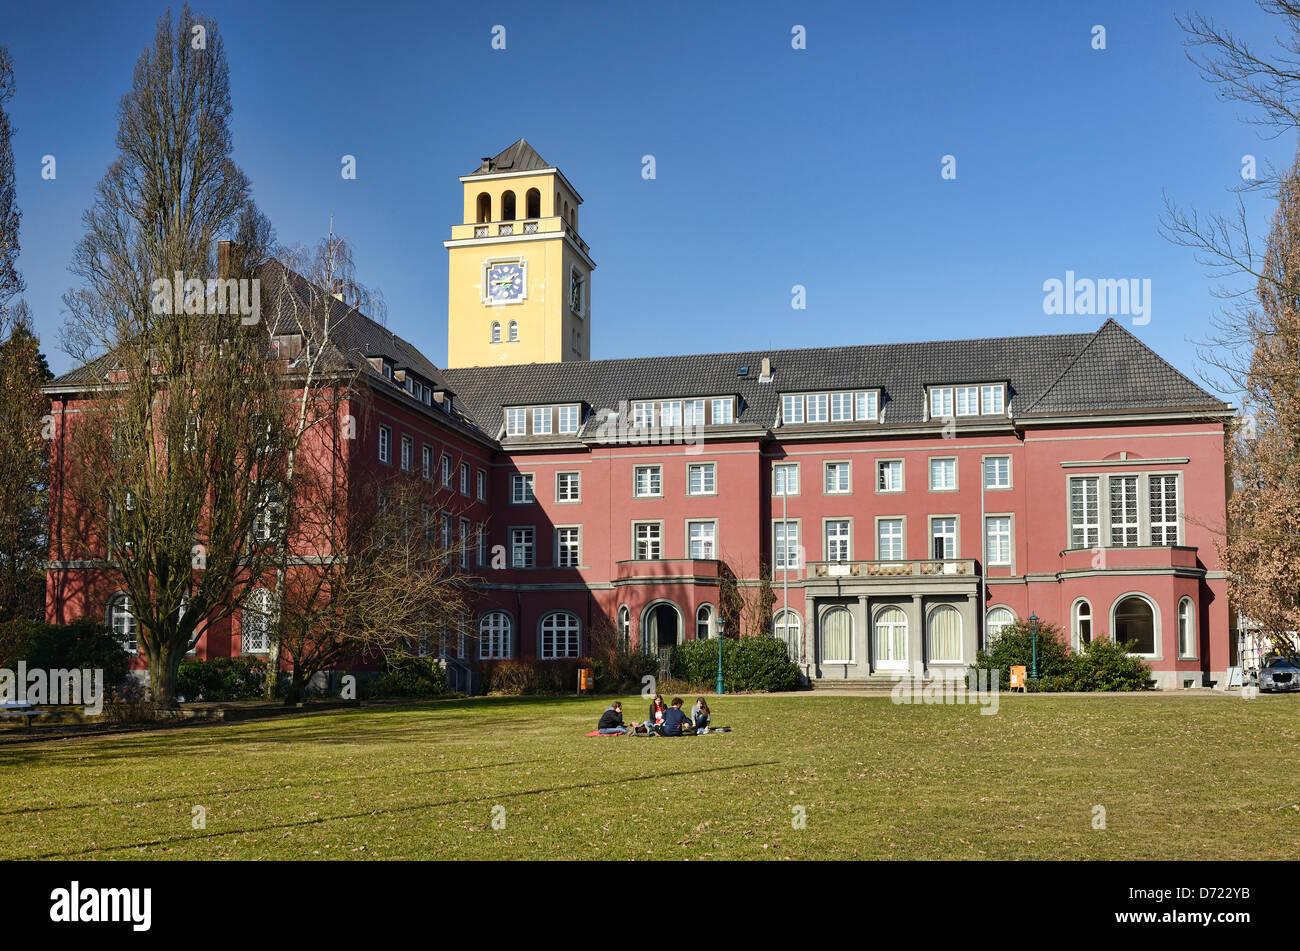 Bergedorfer Rathaus mit neuer Farbe in Mountain Village, Hamburg, Deutschland, Europa Stockfoto